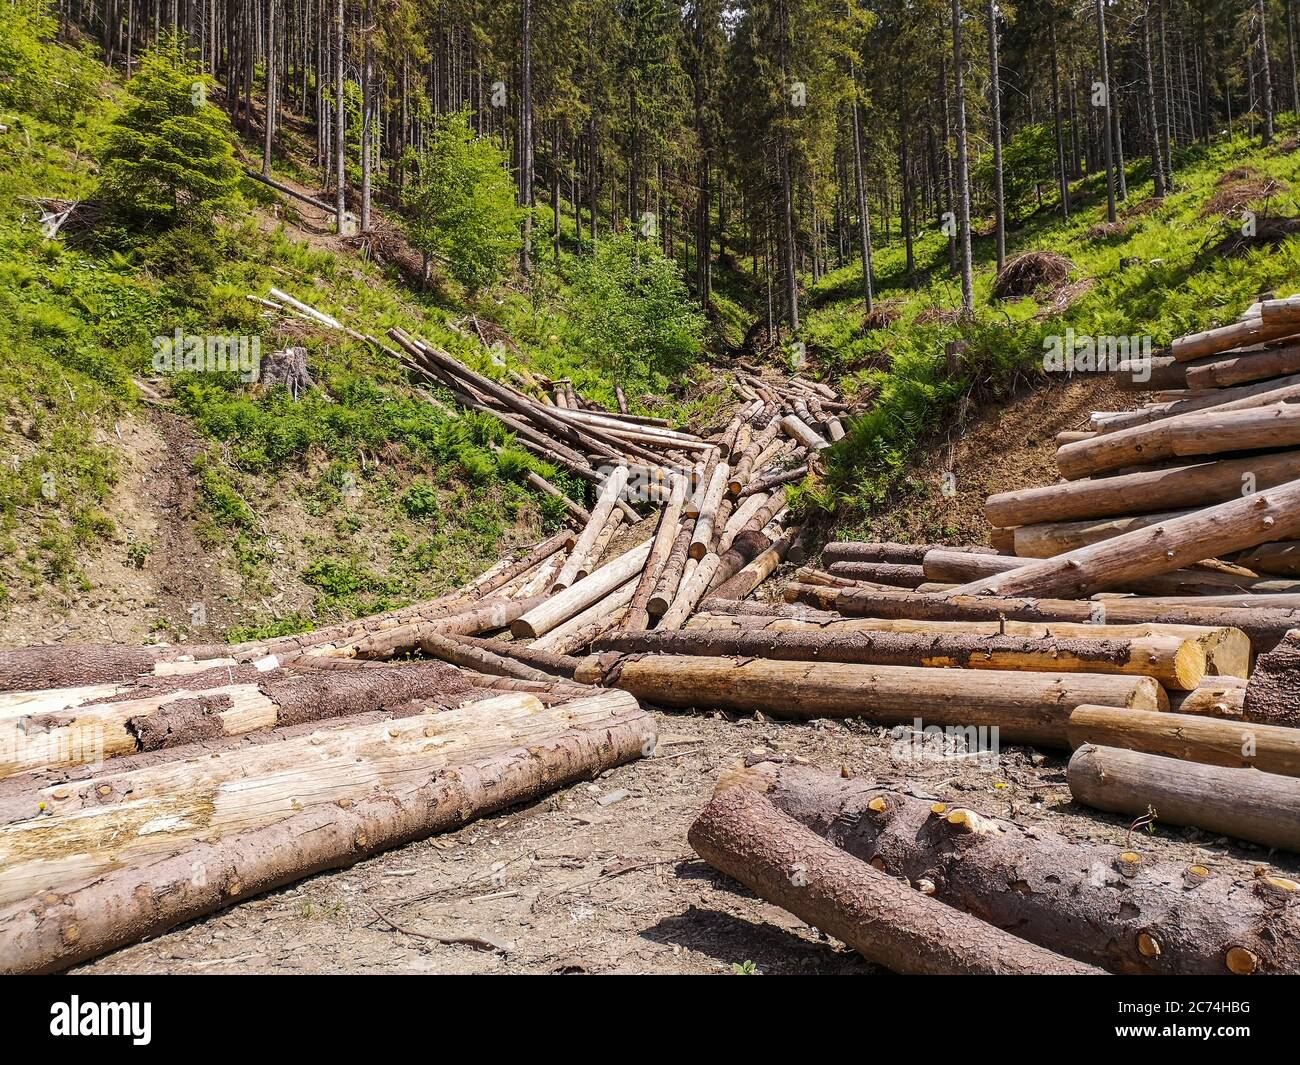 Fichtenholz Holzfällergebiet hoch in den Karpaten. Haufen von geschnittenen Kiefernstämmen, die die Seite der Hügel wie ein Bach abschatten. Stockfoto